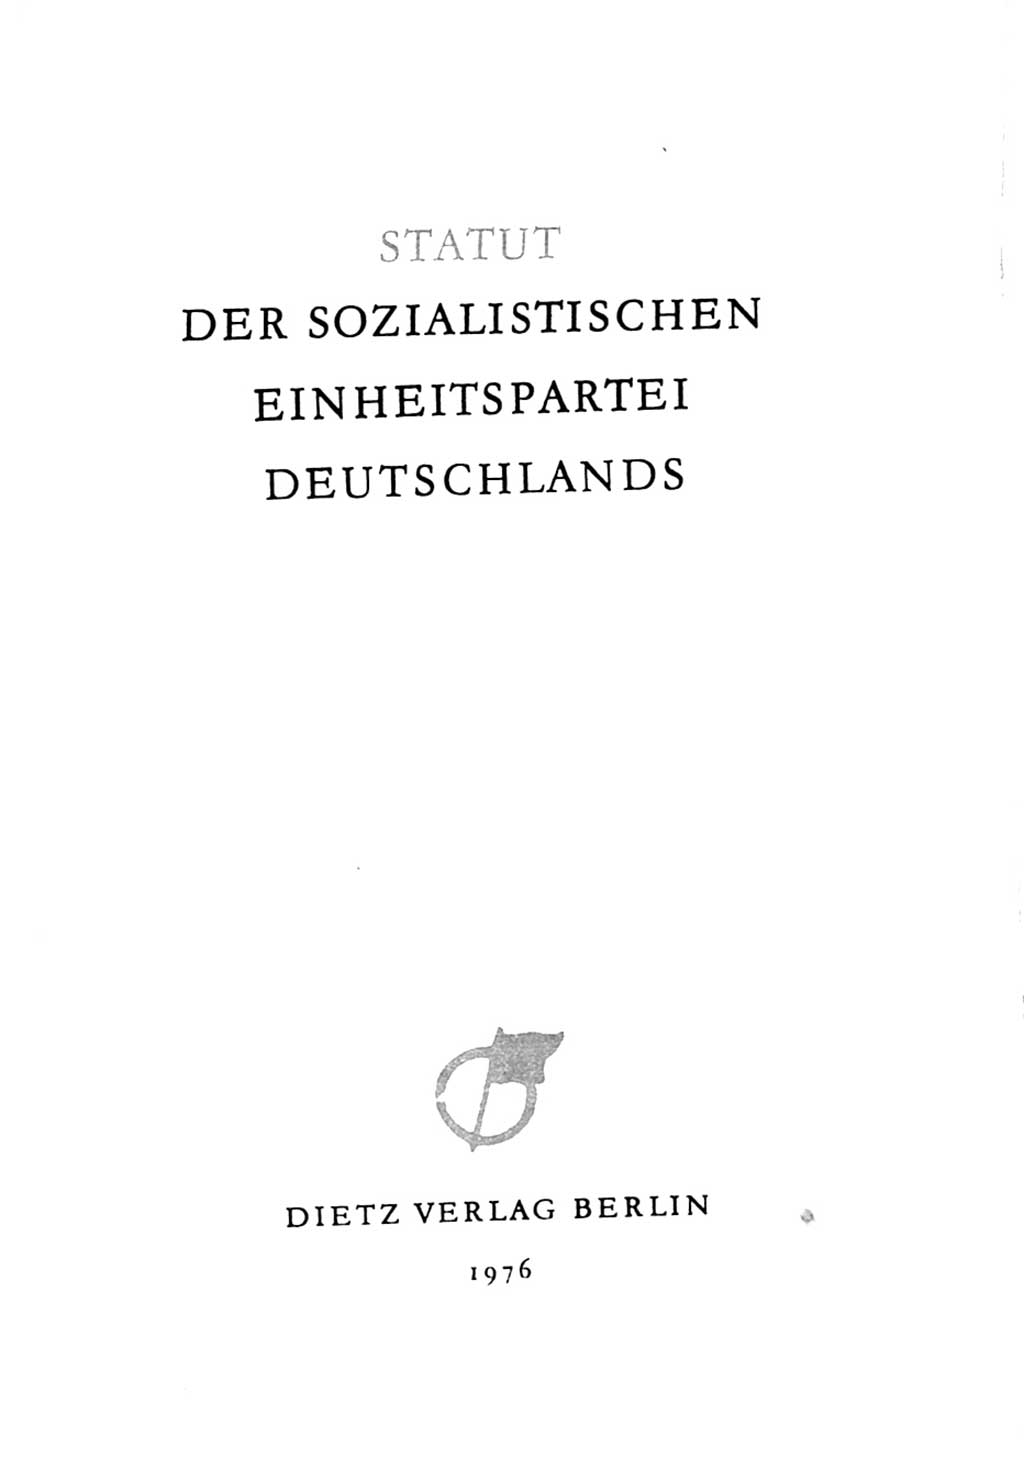 Statut der Sozialistischen Einheitspartei Deutschlands (SED) 1976, Seite 3 (St. SED DDR 1976, S. 3)